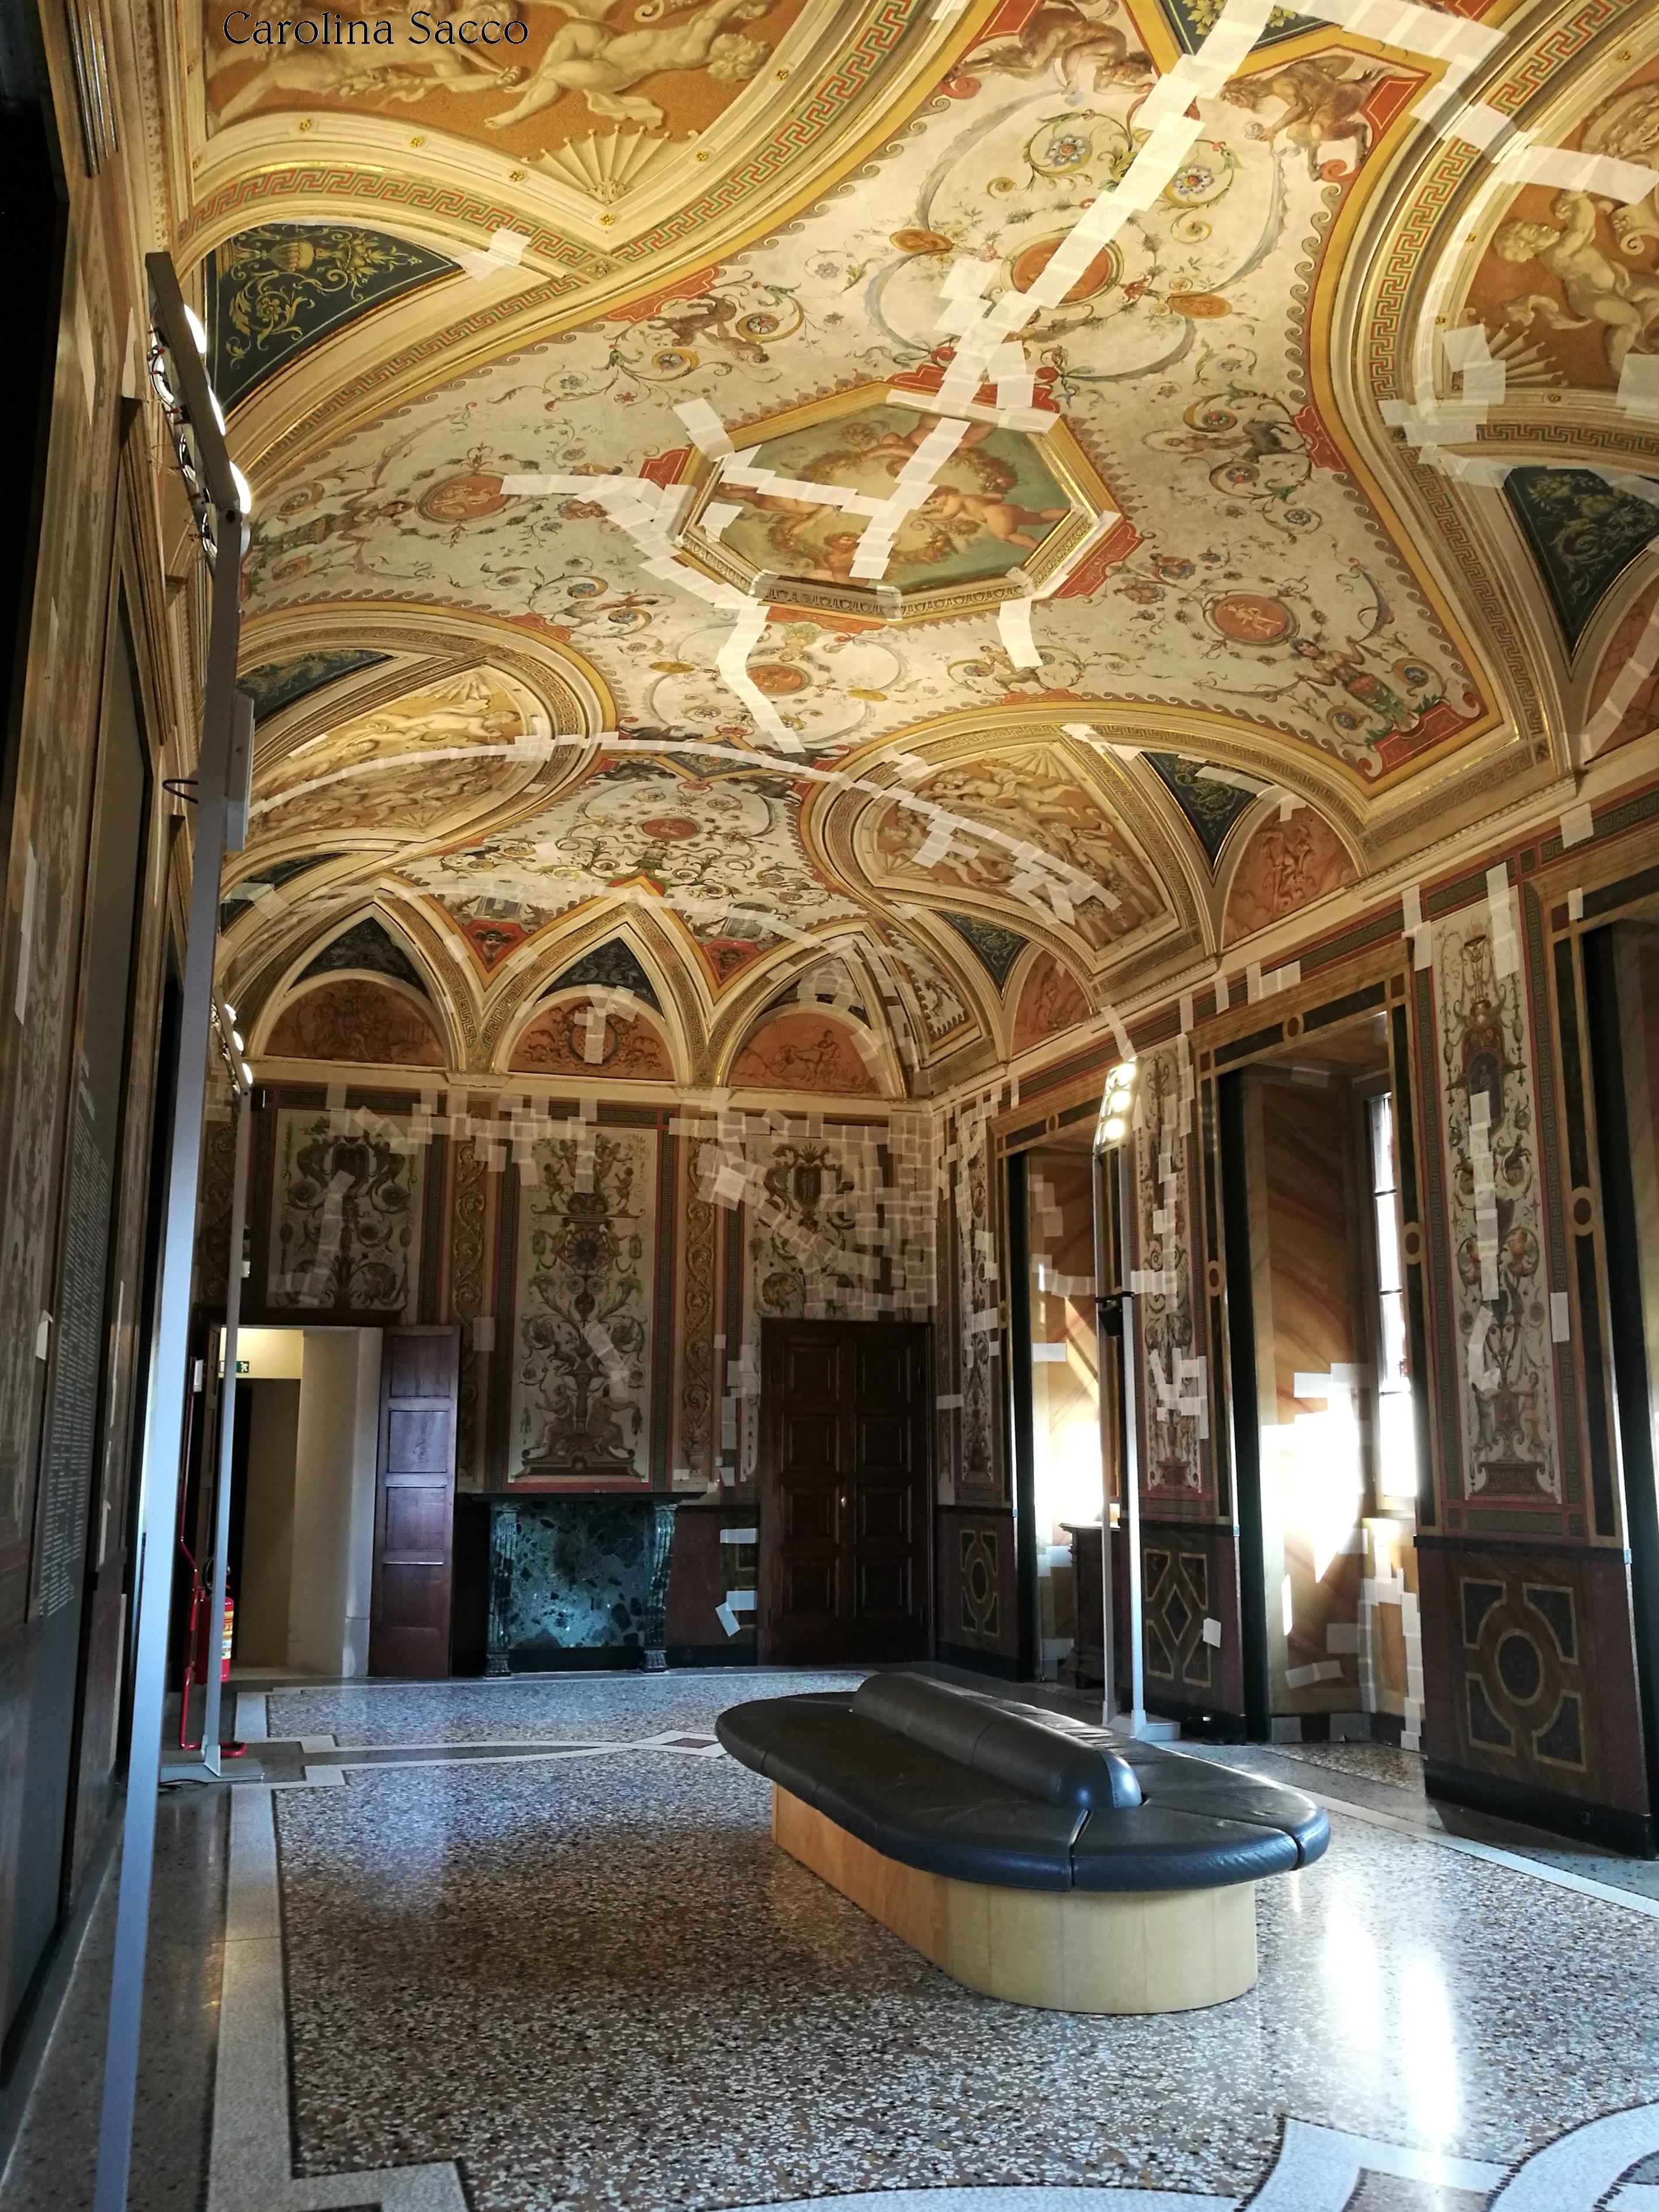 Castello Estense